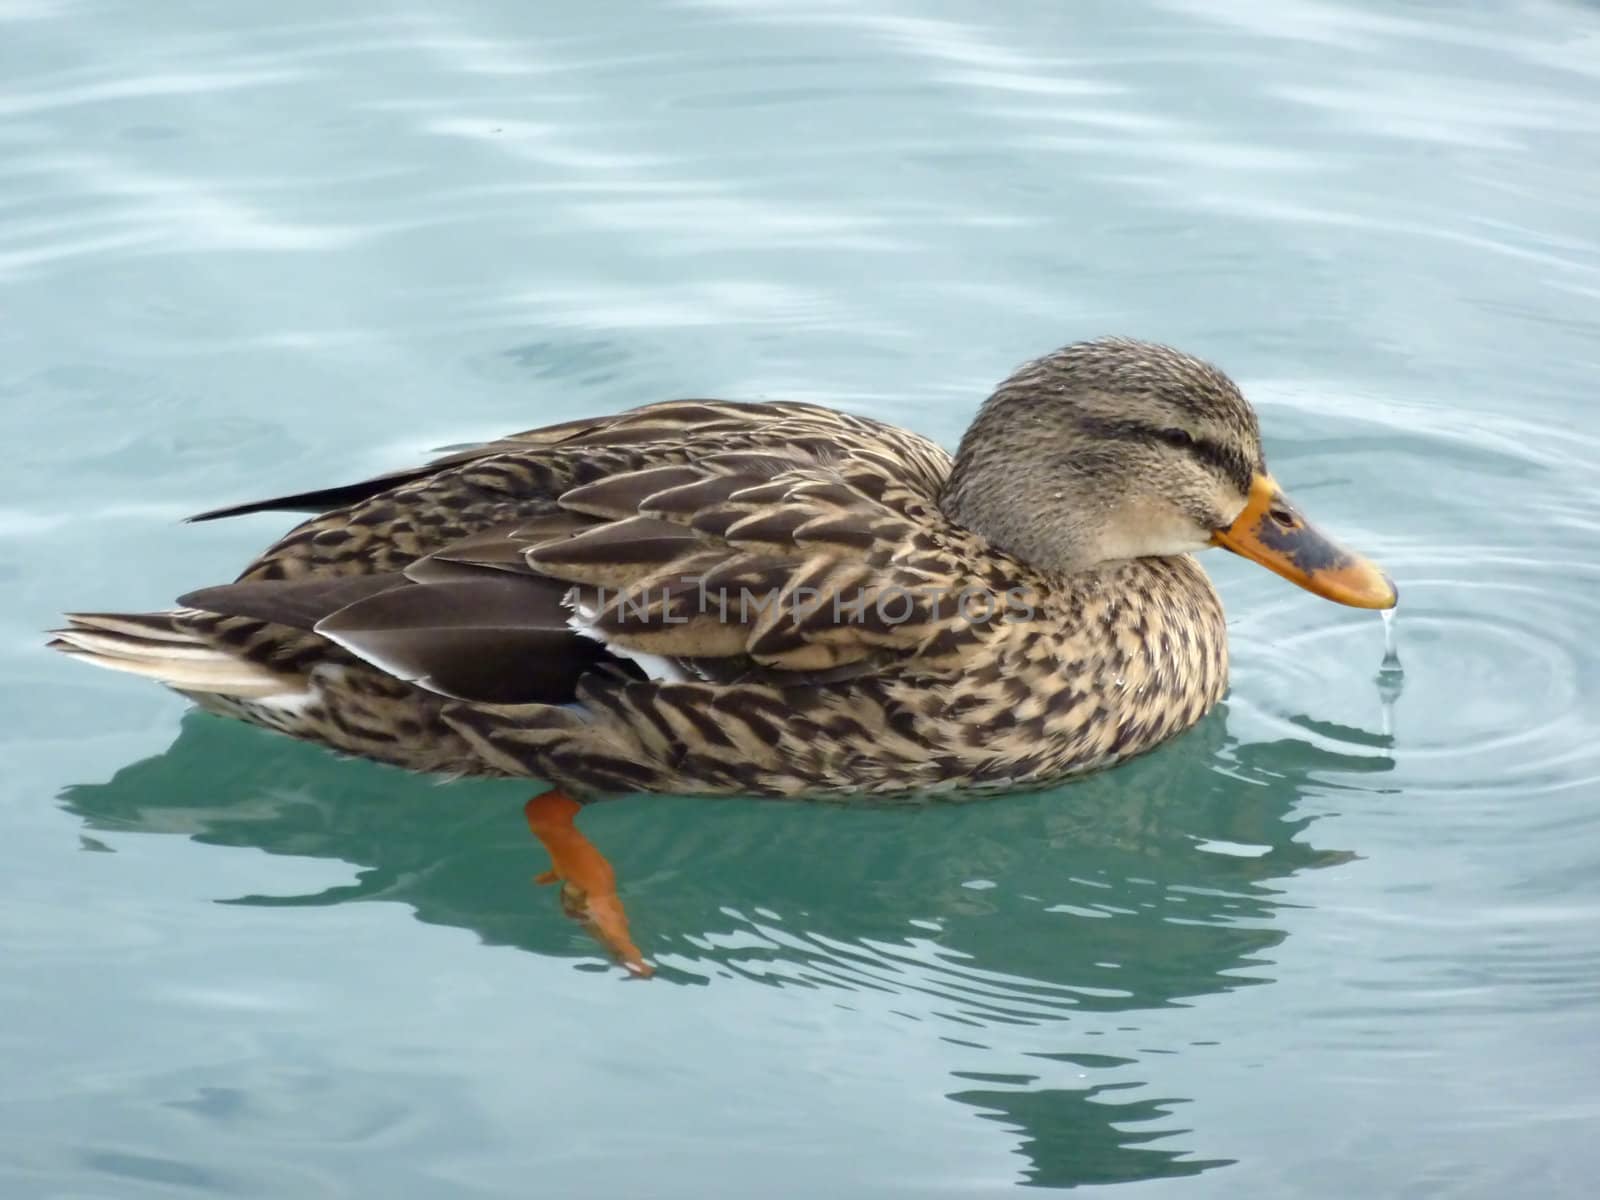 Mallard duck floating on water by Elenaphotos21